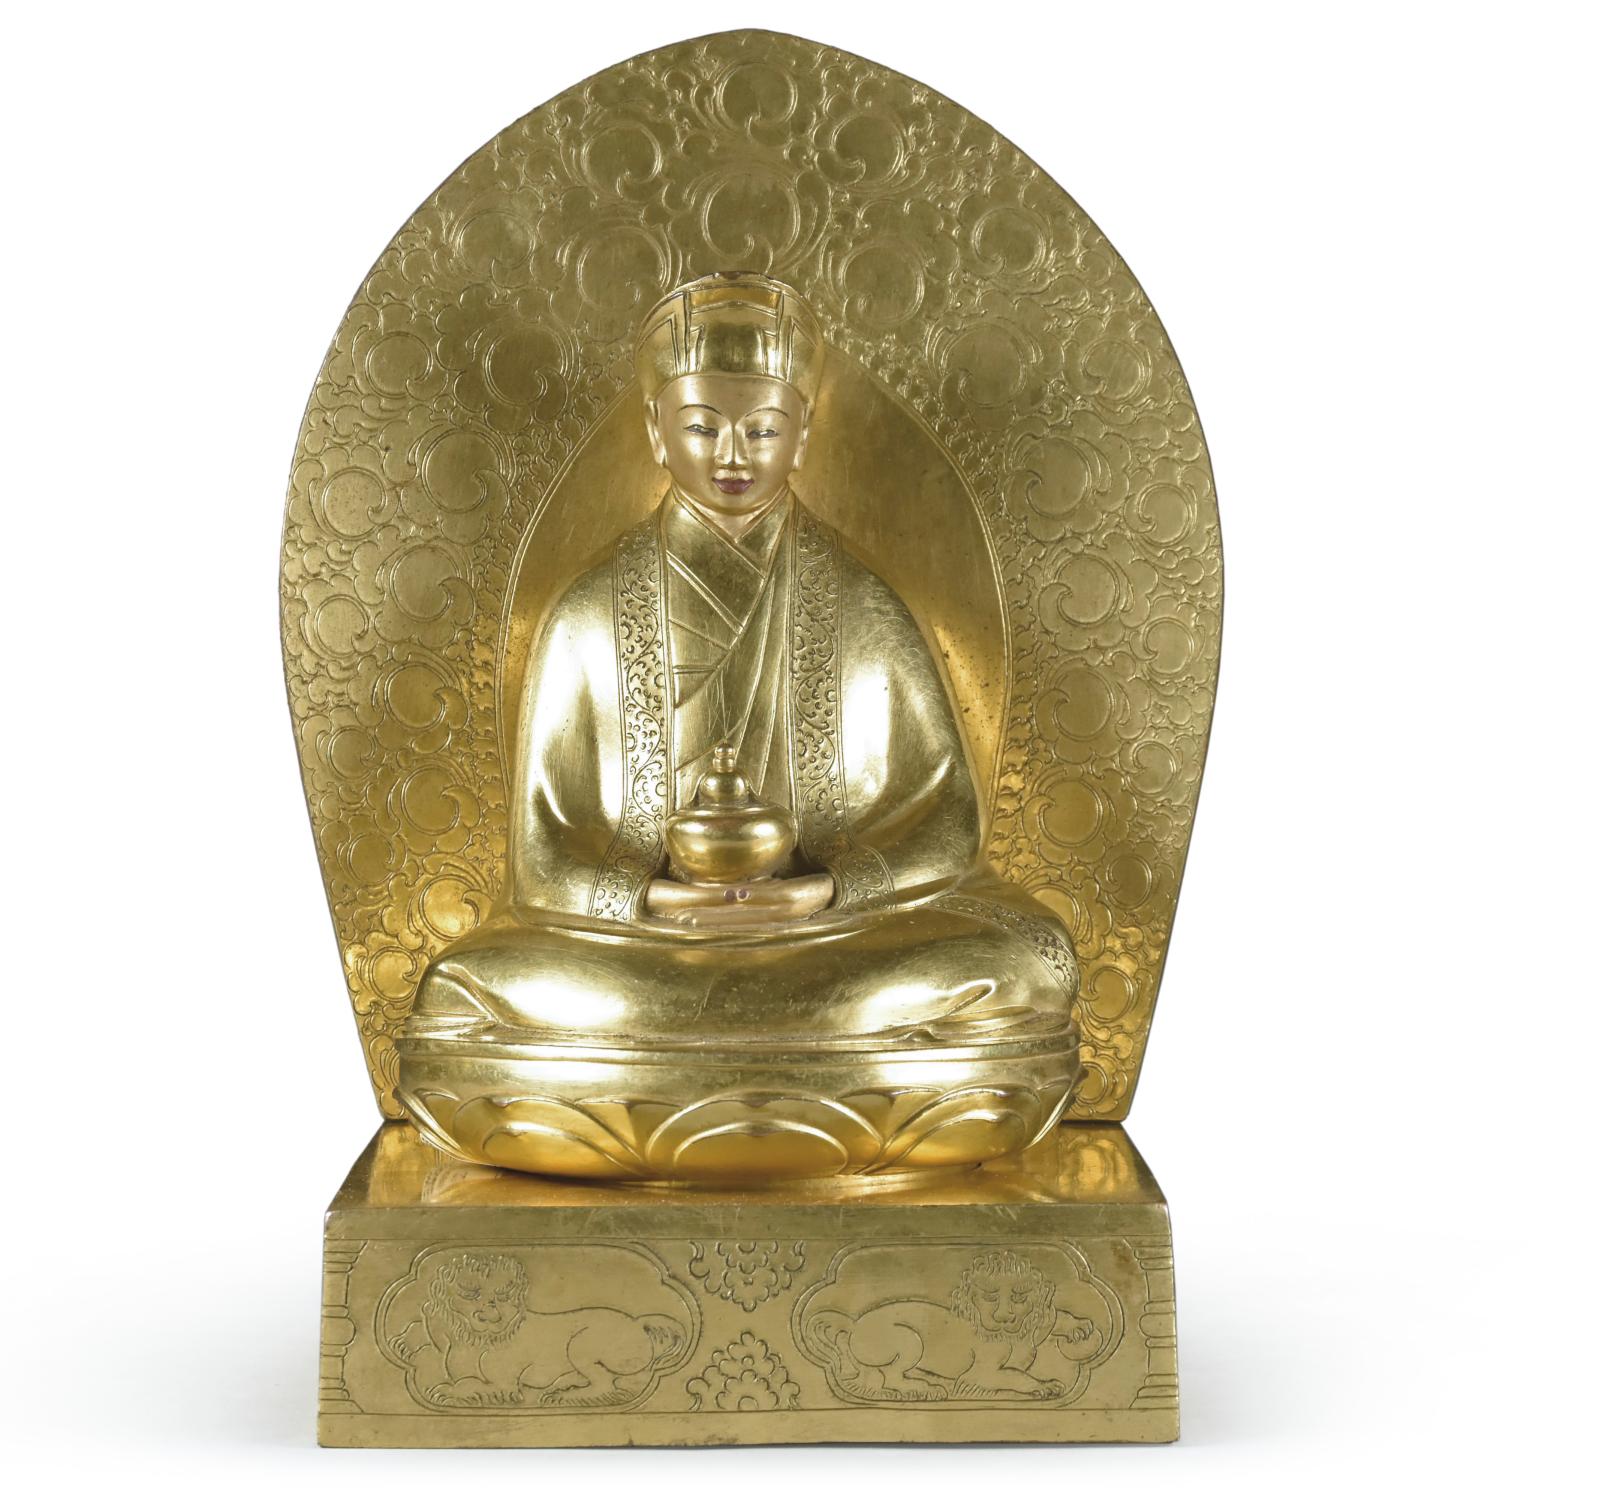 Tibet (ou Mongolie ?), vers 1800. Donateur représenté en haut dignitaire, assis en position de méditation sur un socle lotiforme, le desso